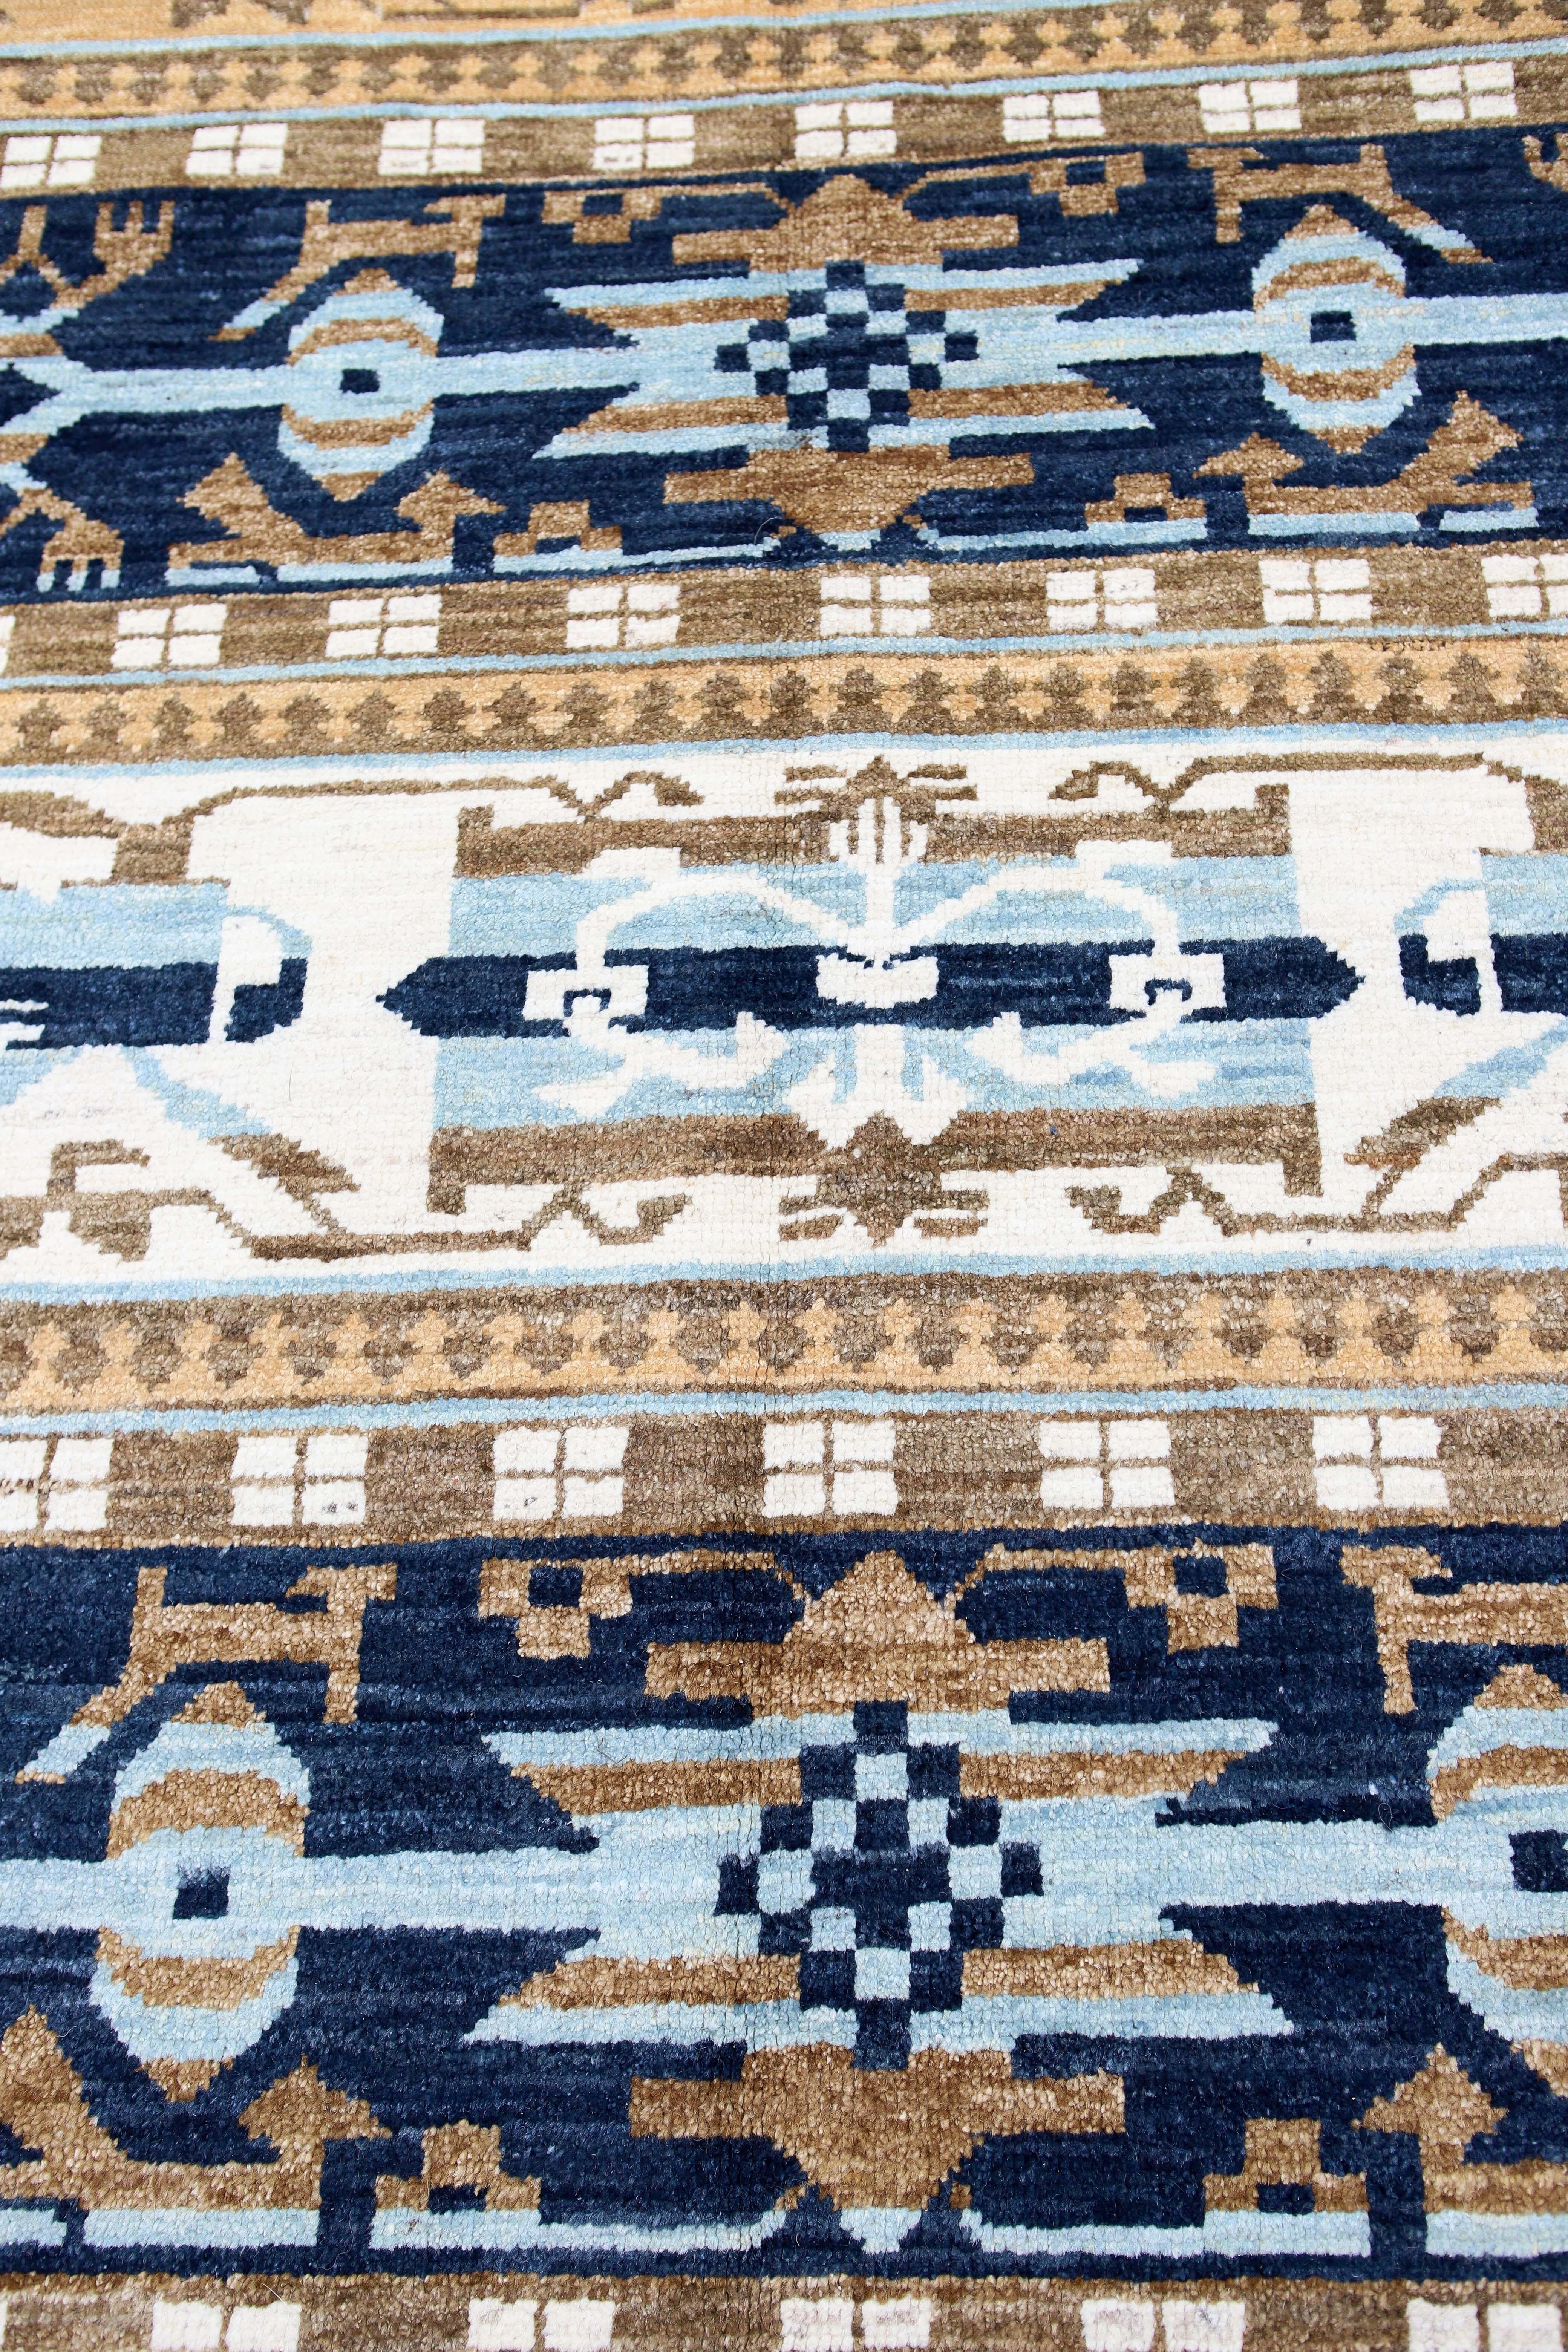 Tapis 10x14 de style transitionnel bleu afghan.
Noué à la main avec de la laine filée à la main, tissé en Afghanistan. Mesures : 10'4' x 14